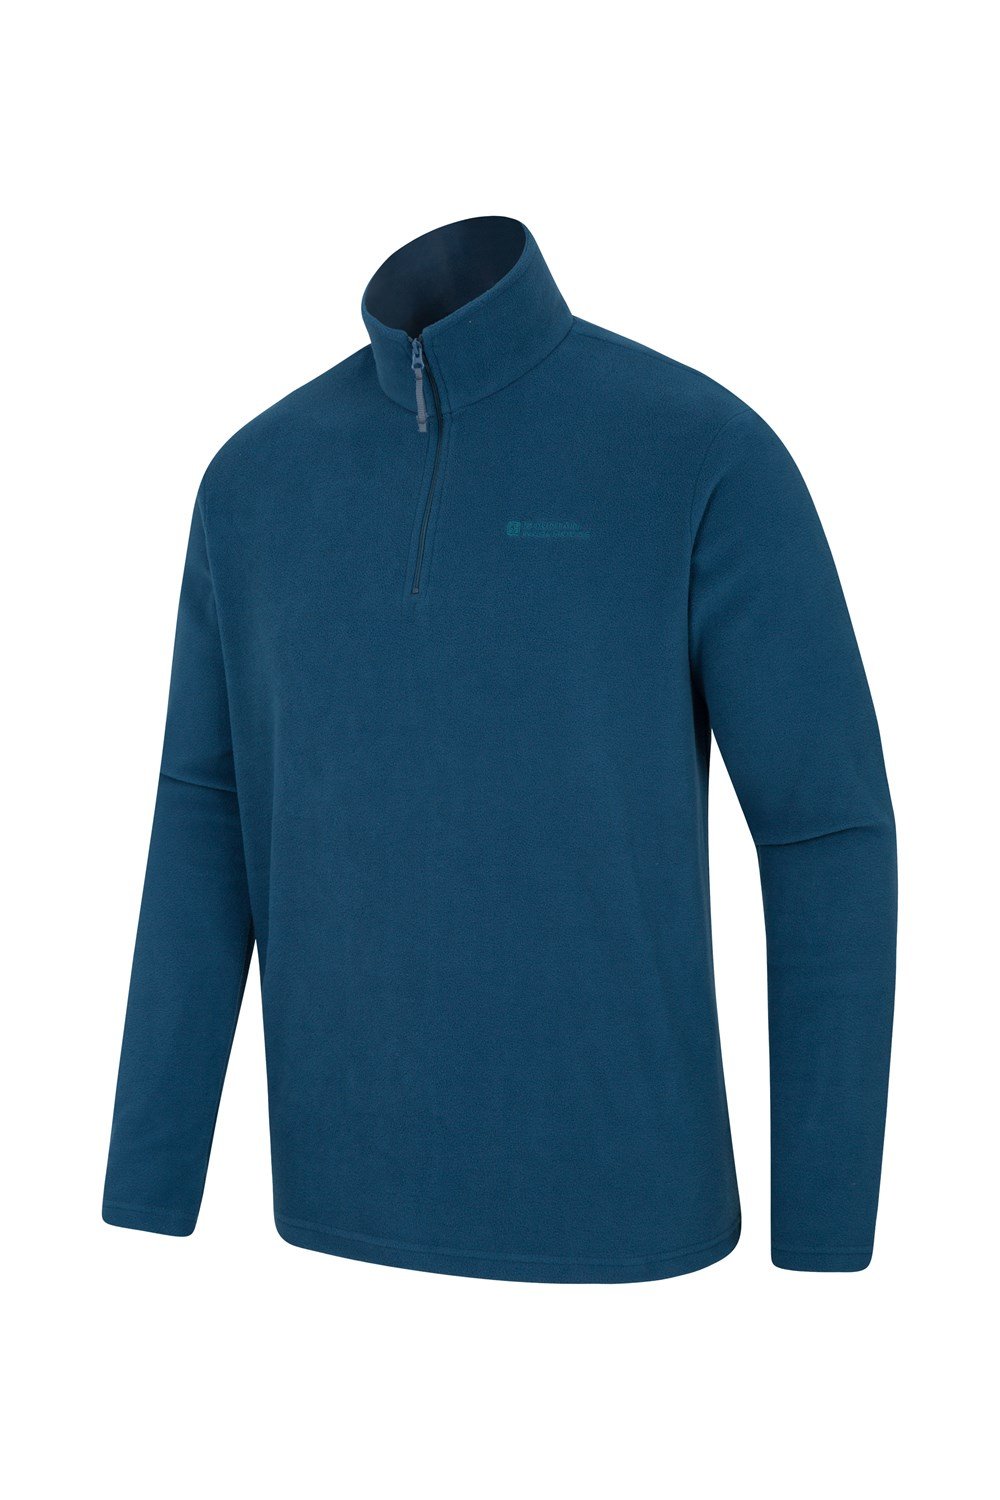 Mountain Warehouse Mens Micro Fleece Top Lightweight Antipill Sweater ...